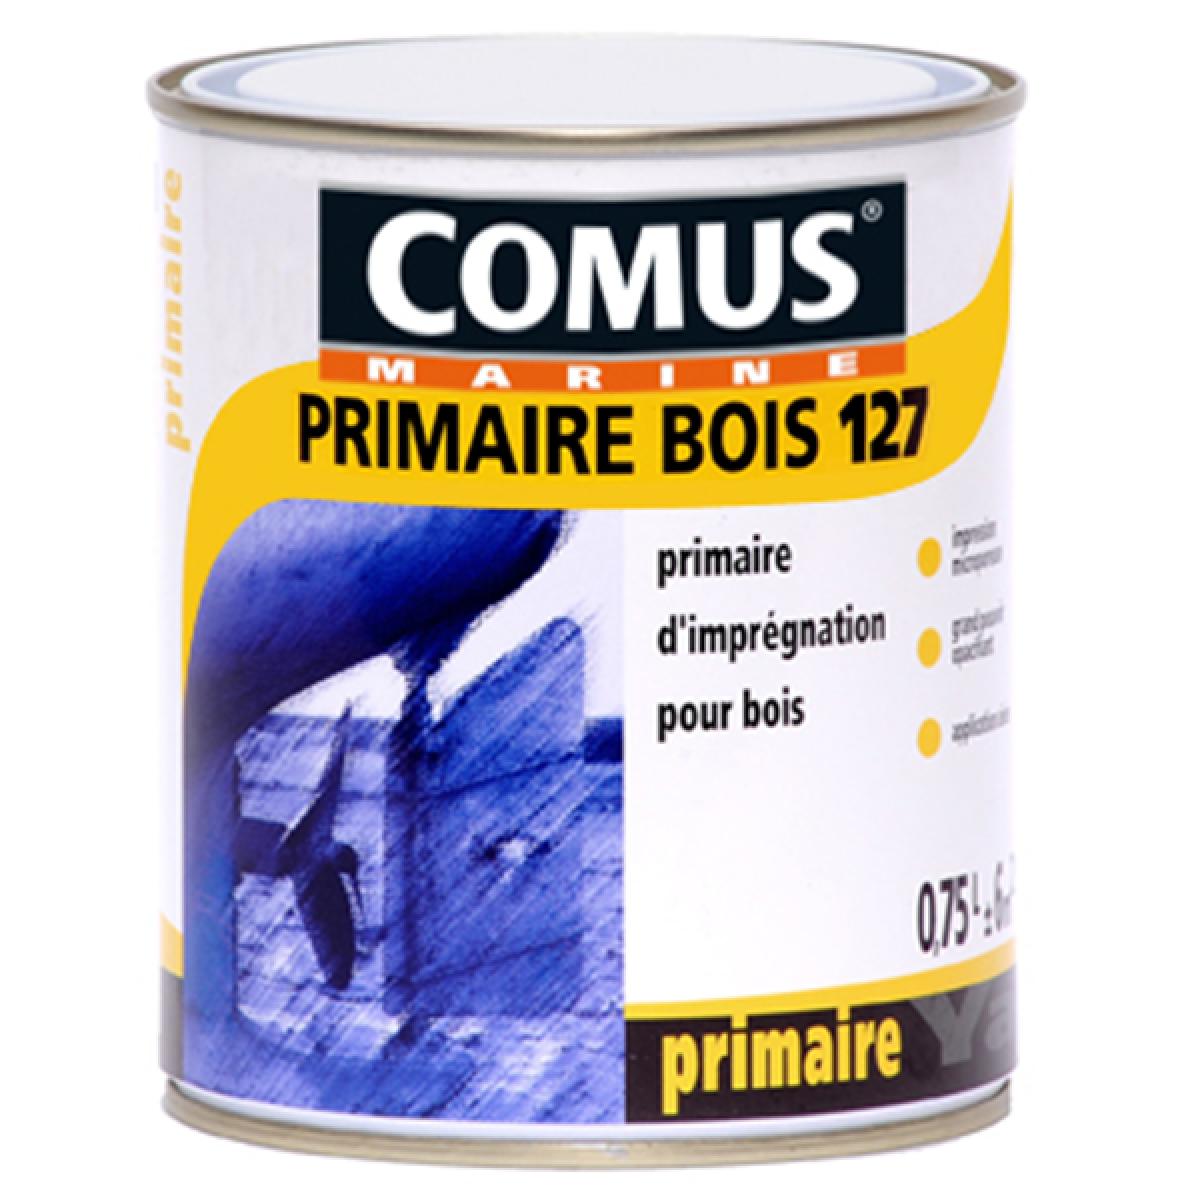 Comus - PRIMAIRE BOIS 127 - Blanc 2,5L - Primaire d'impression destinée à la mise en peinture des bois neufs ou décapés - COMUS MARINE - Peinture extérieure